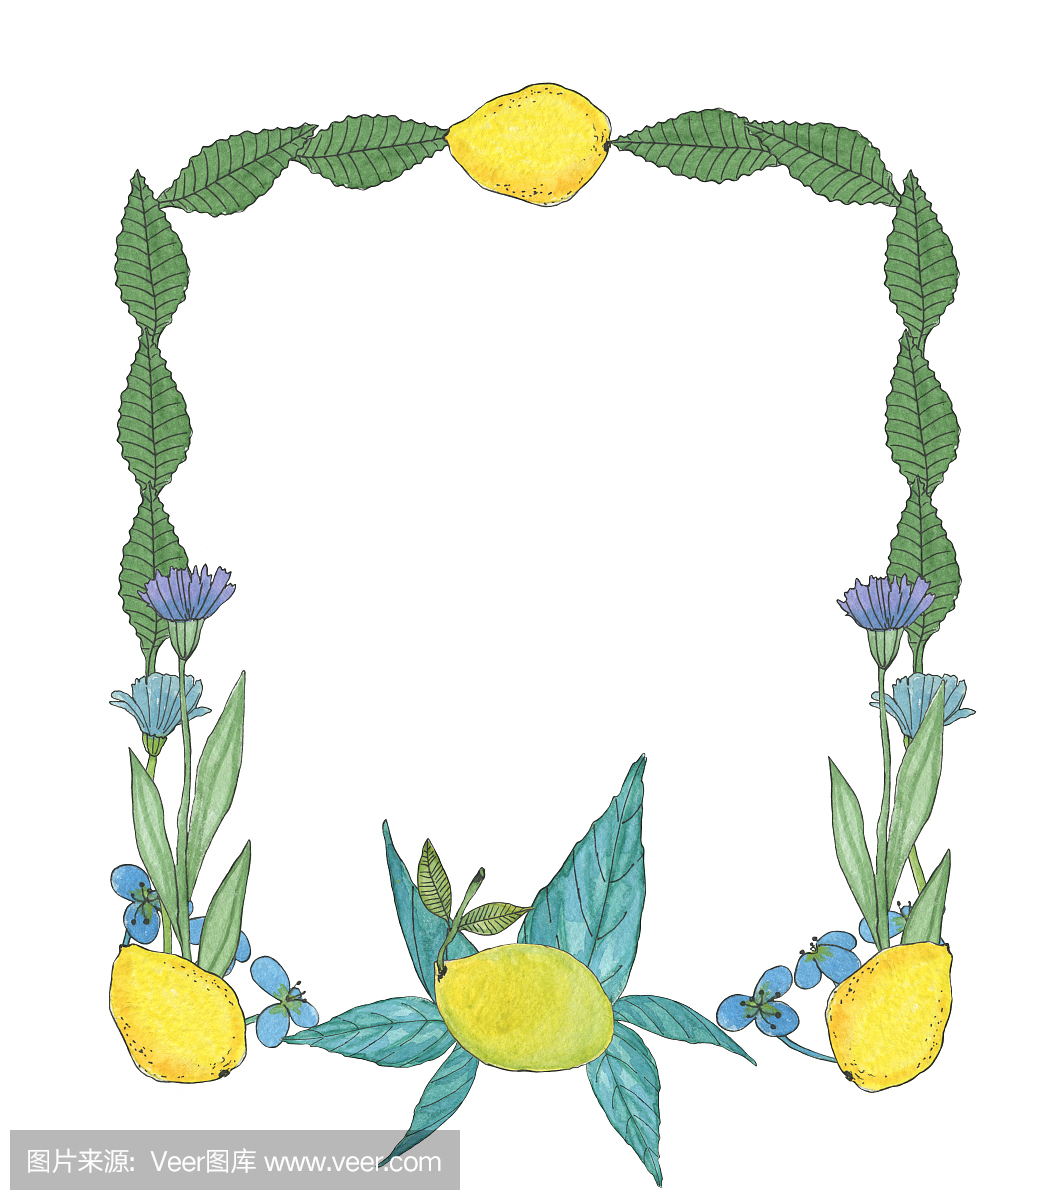 由手绘热带花卉和柑橘类水果柠檬的框架